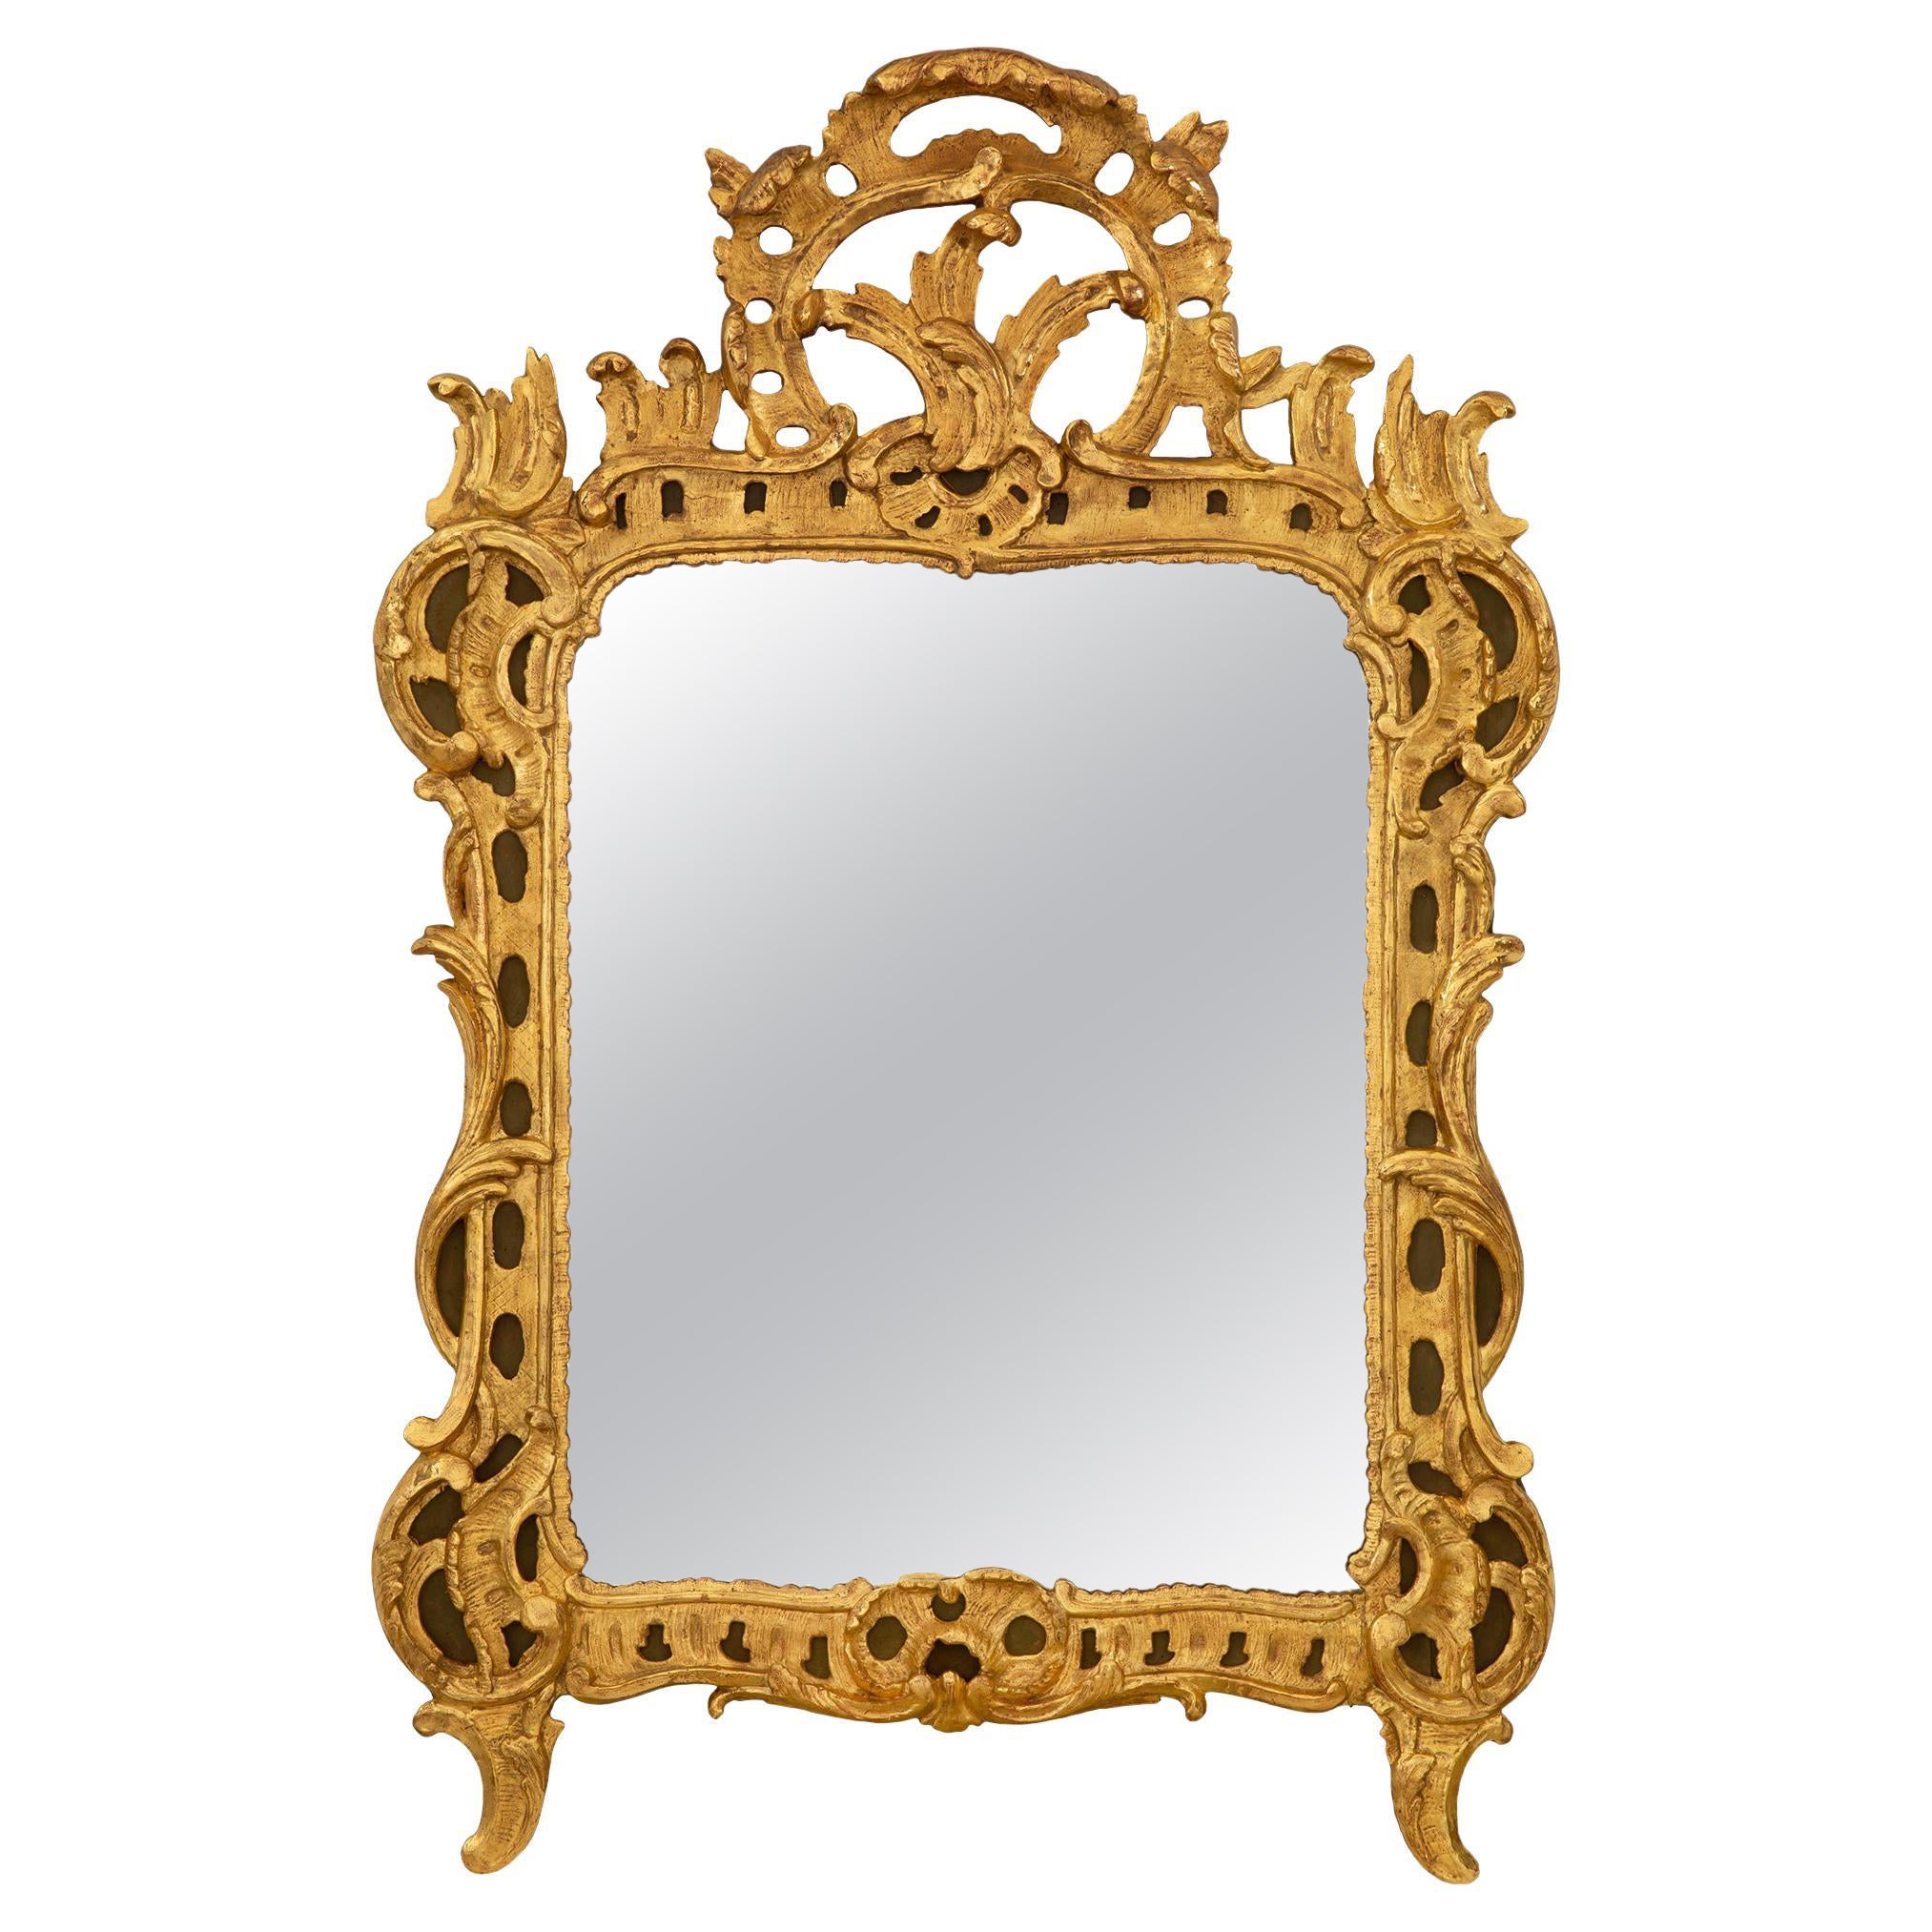 Miroir en bois doré français du XVIIIe siècle de la période de la Rgence